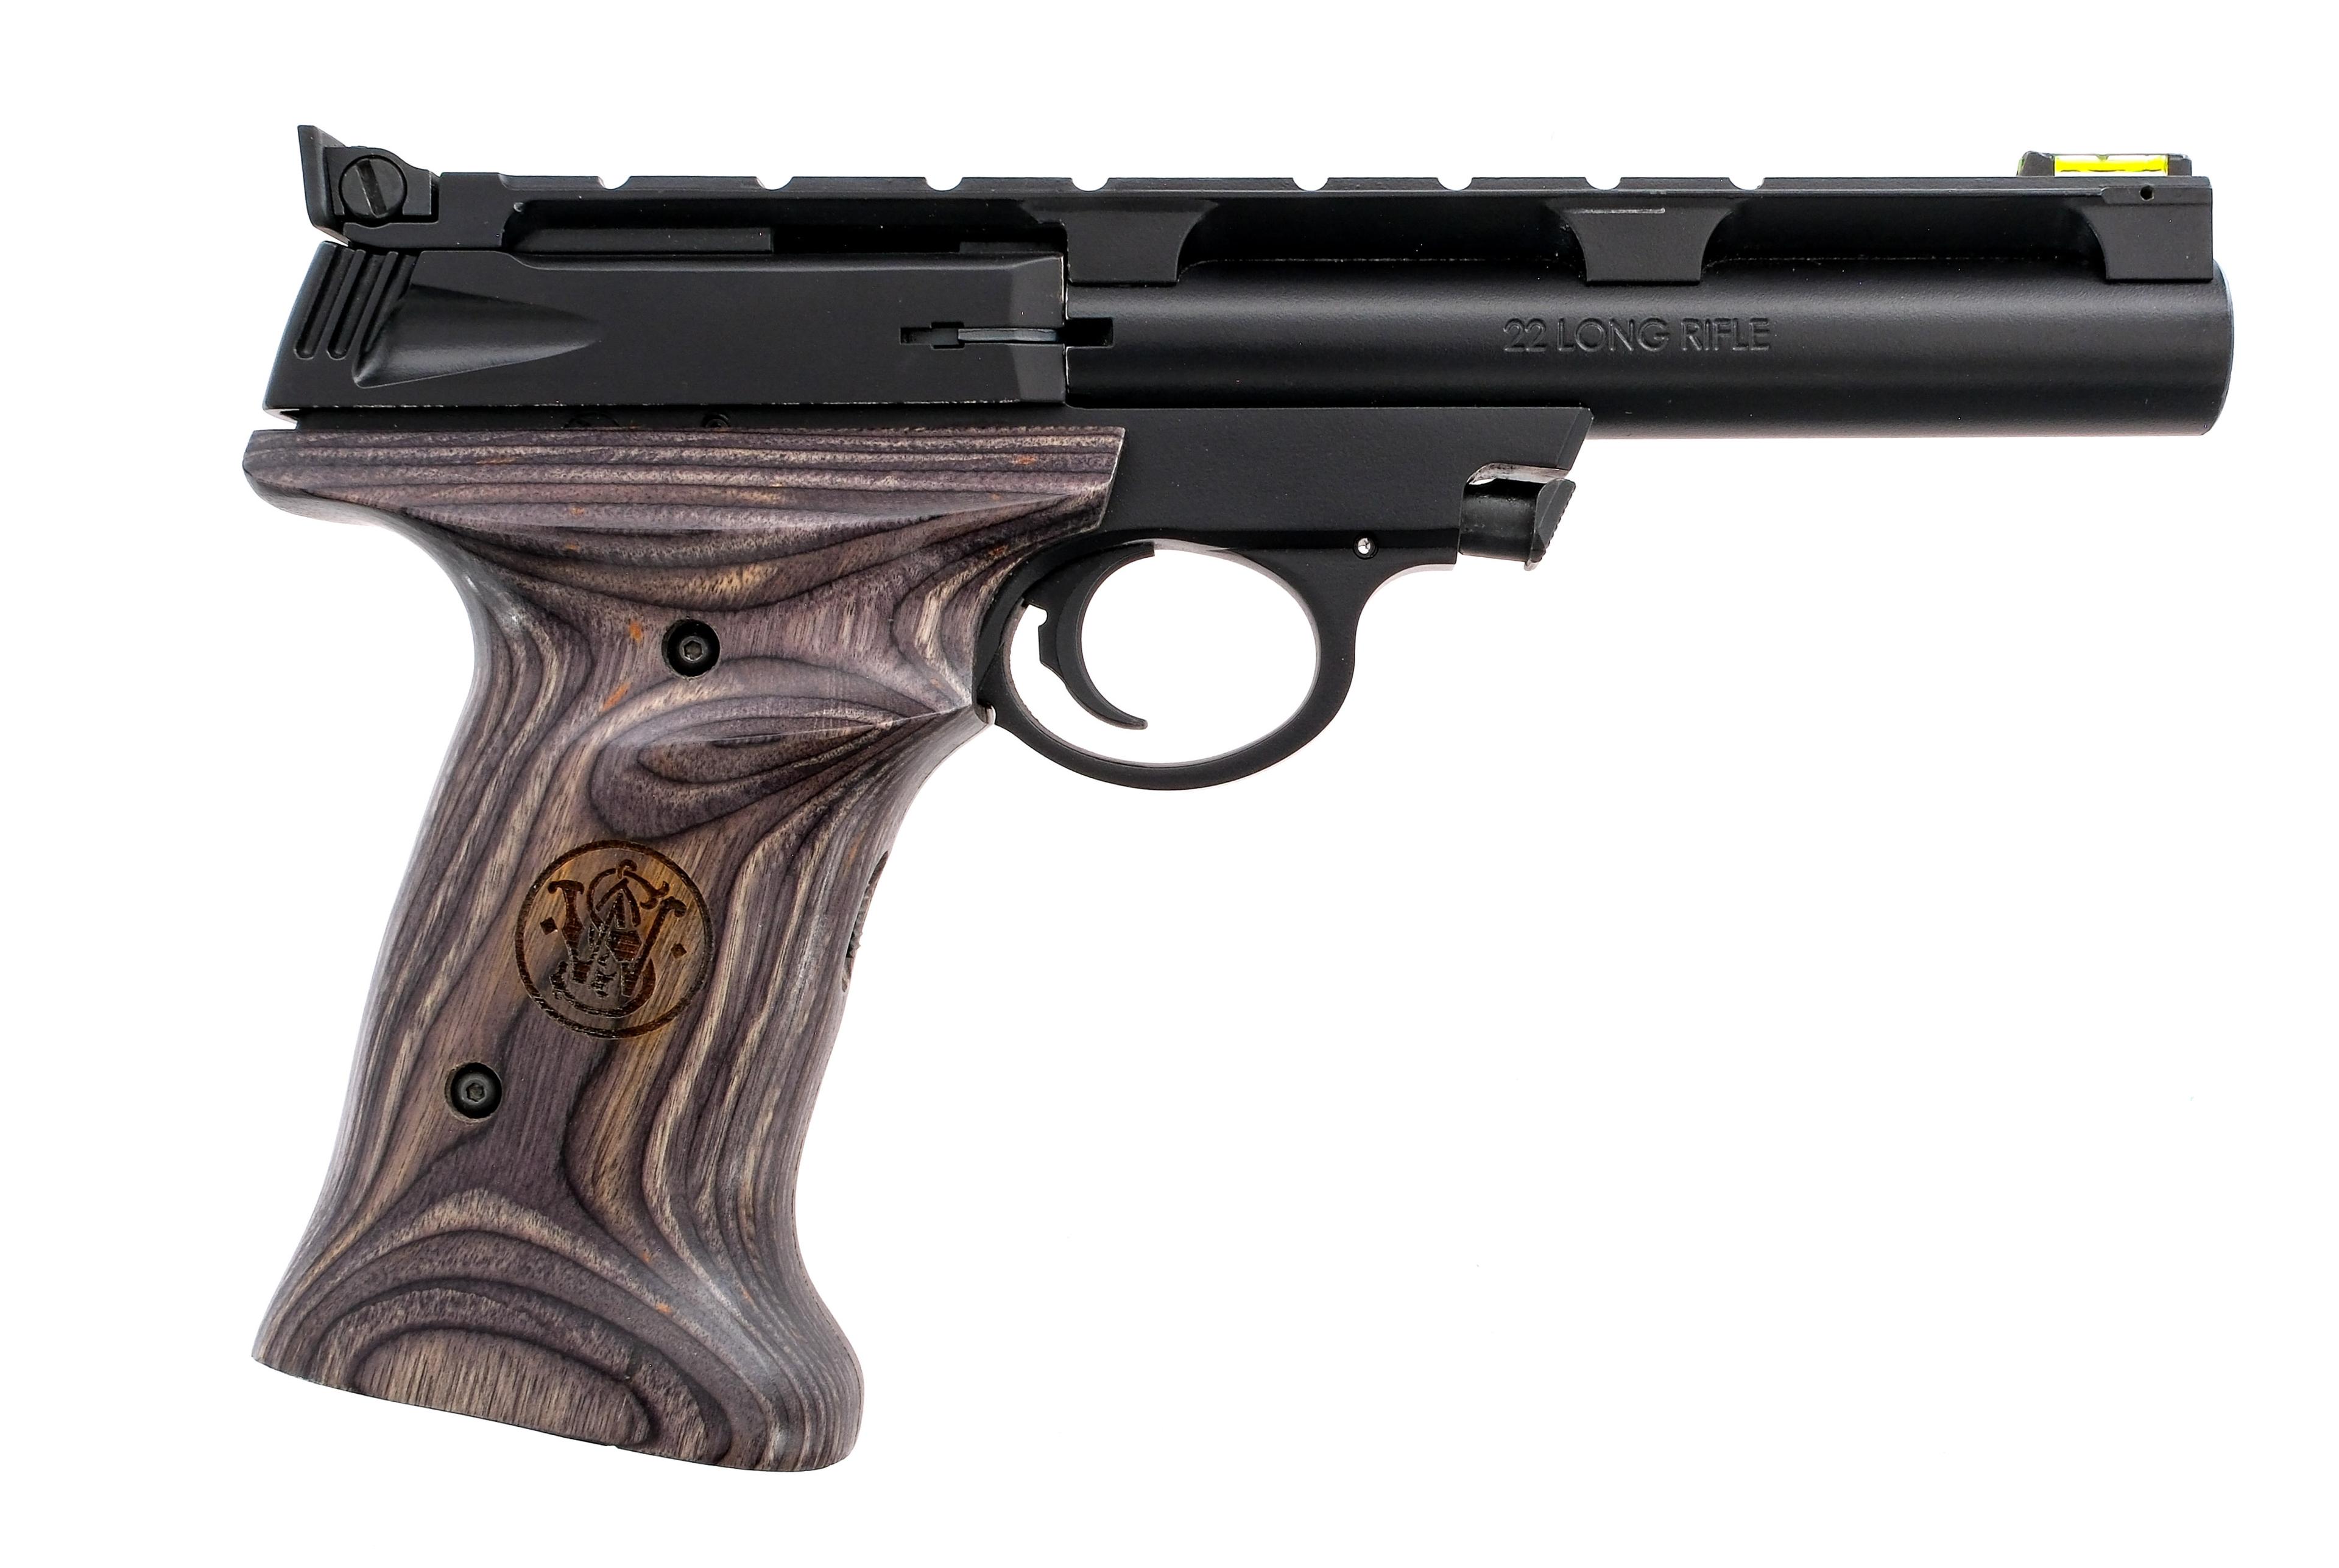 Smith & Wesson 22A-1 .22 LR Semi Auto Pistol